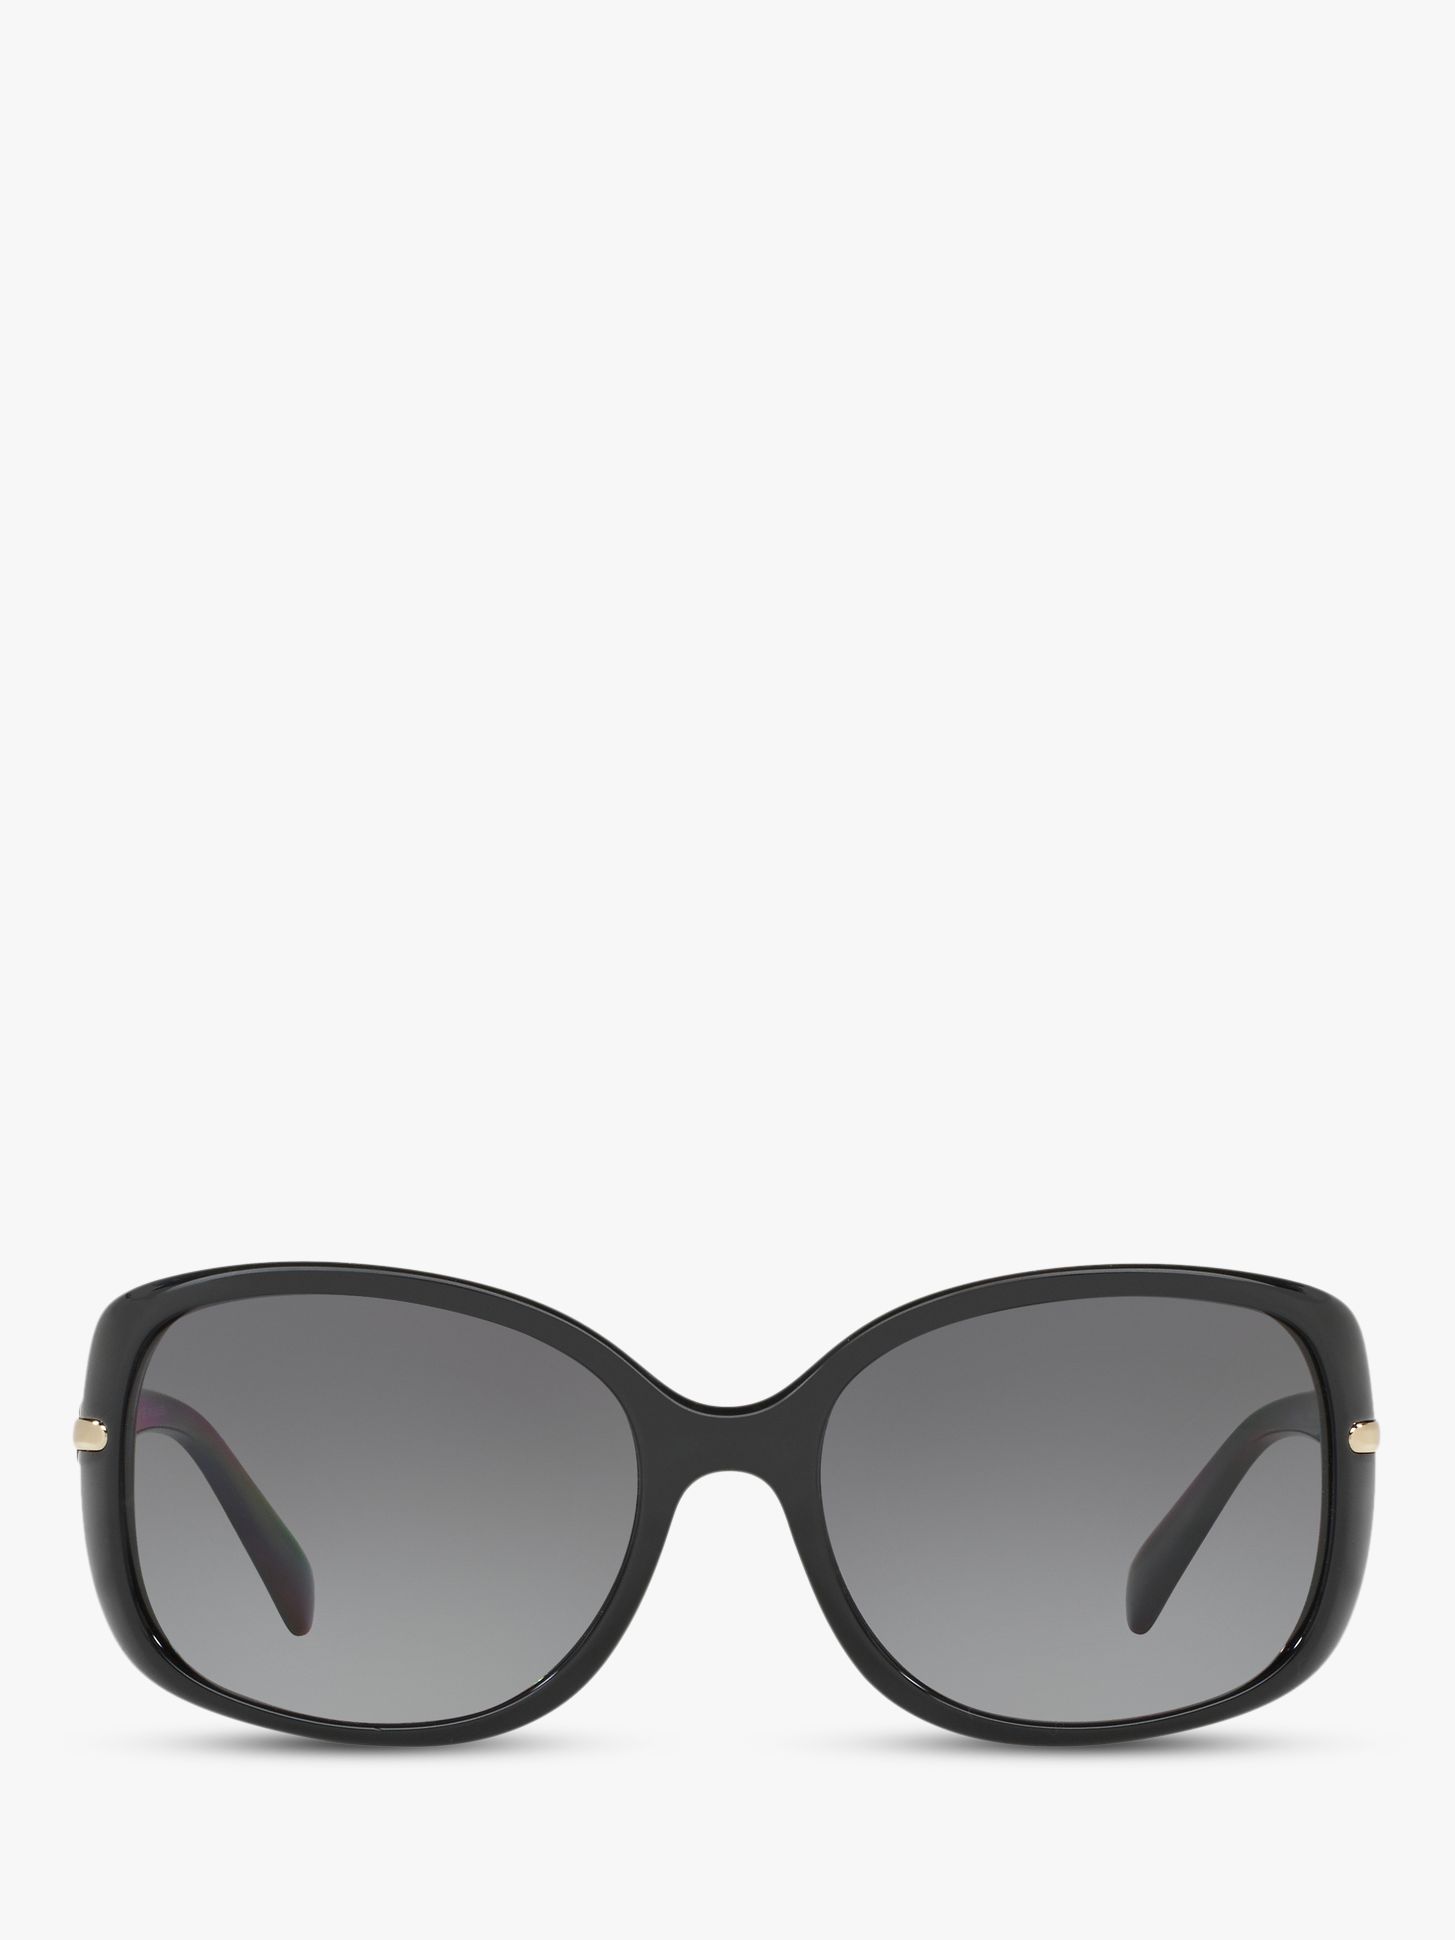 Prada PR 08OS Women's Polarised Rectangular Sunglasses, Black/Grey Gradient